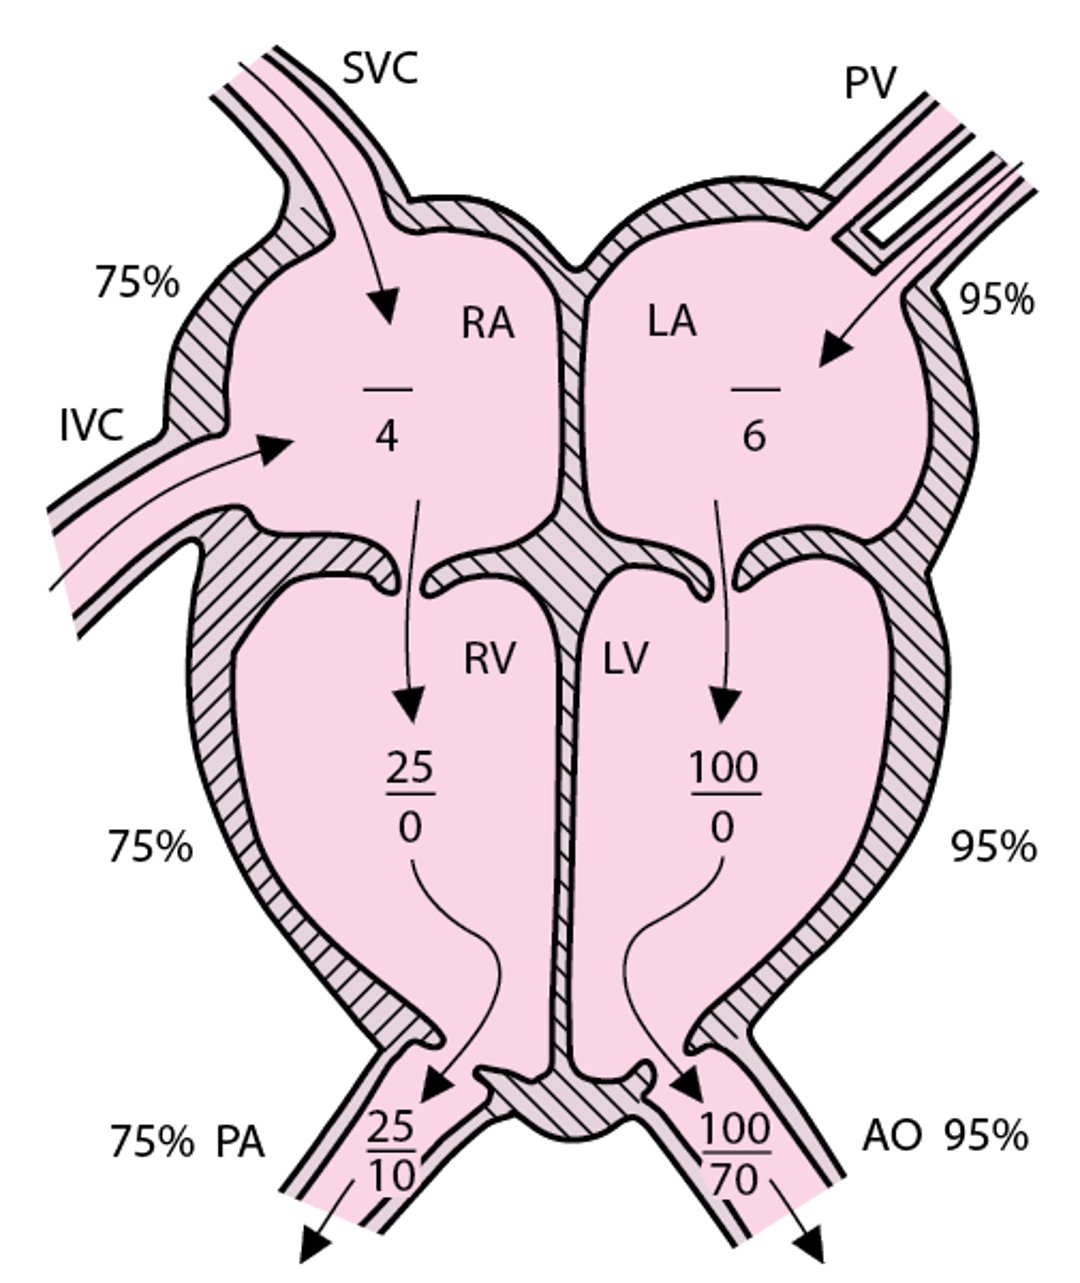 Circolazione normale con pressioni cardiache indicative destre e sinistre (in mmHg)